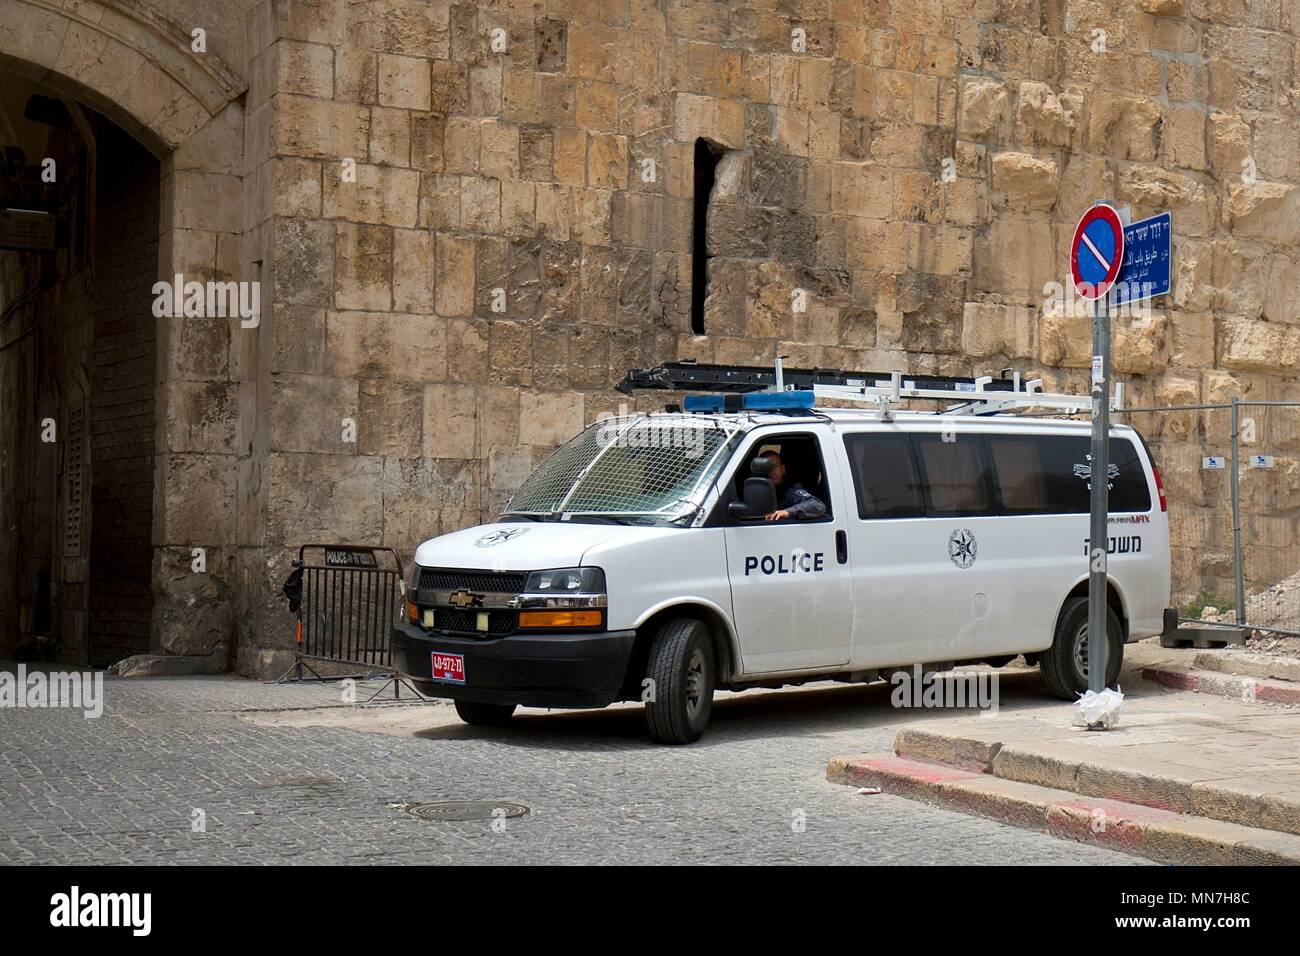 Police car on the street`s of Jerusalem Stock Photo